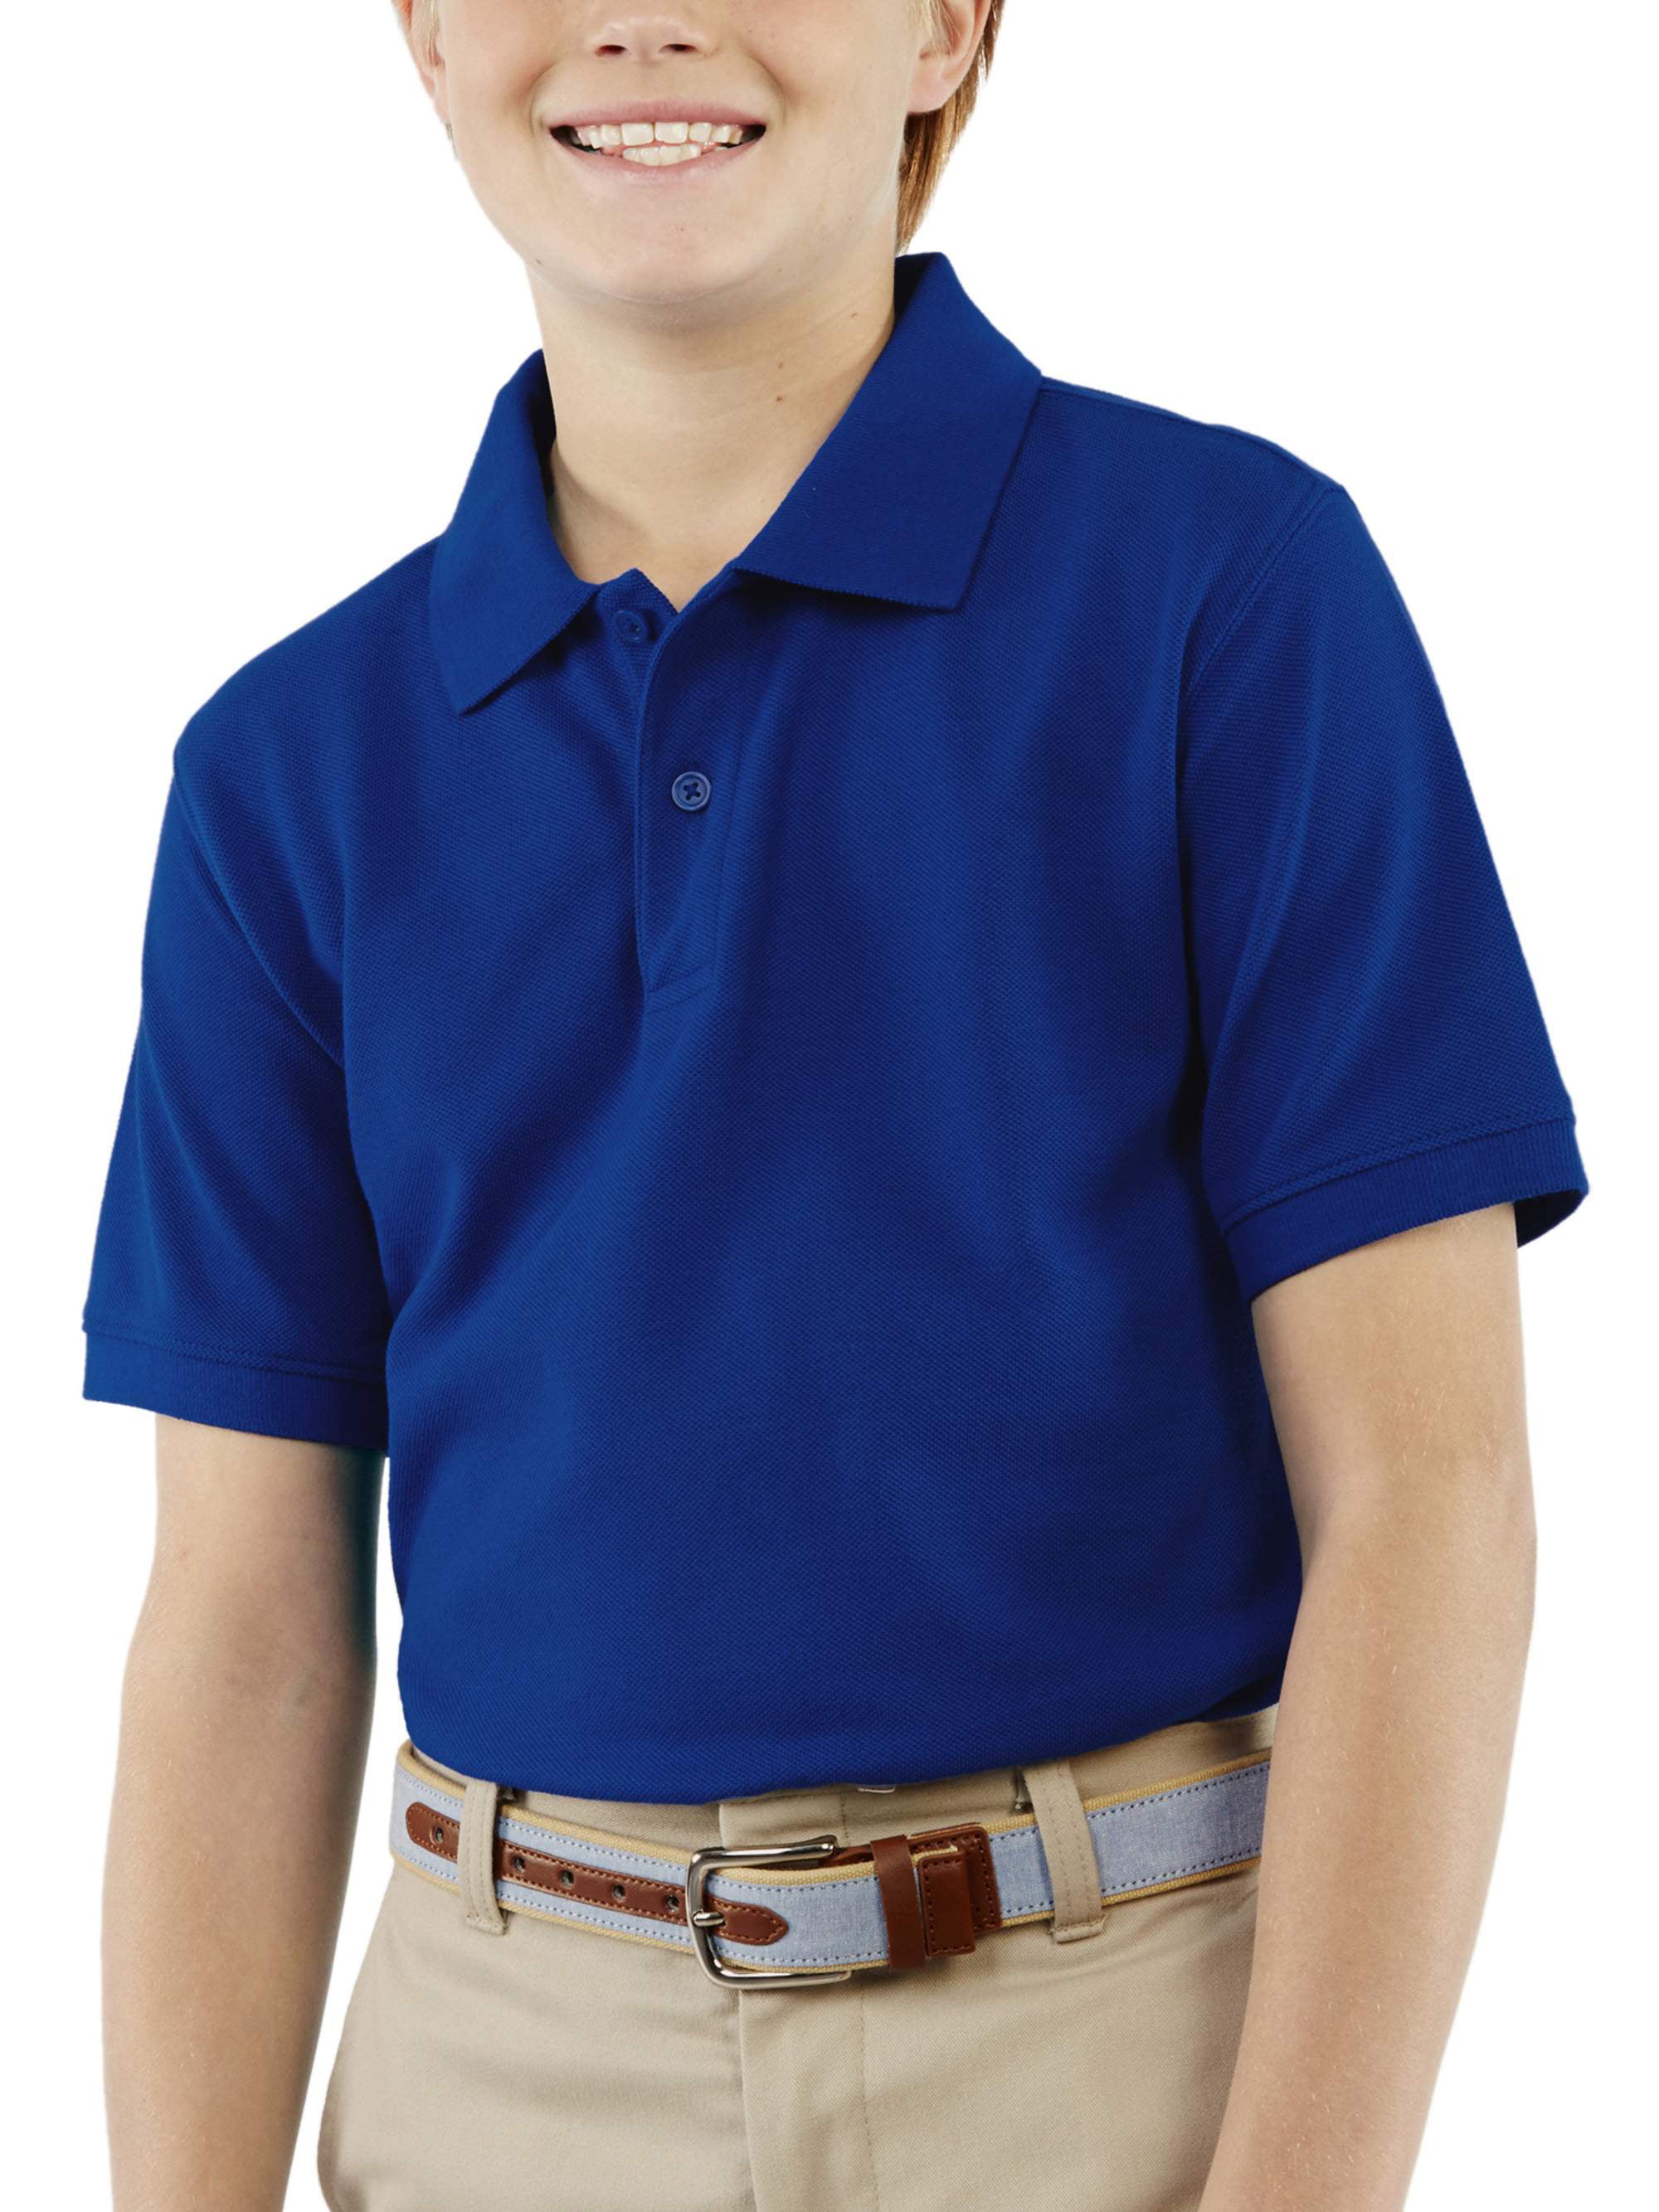 Boys polo. Школьная форма с рубашкой поло. Navy short Sleeve Polo Shirt Kids. Polo Shirt boy. George School Polo Shirt boy Blue.